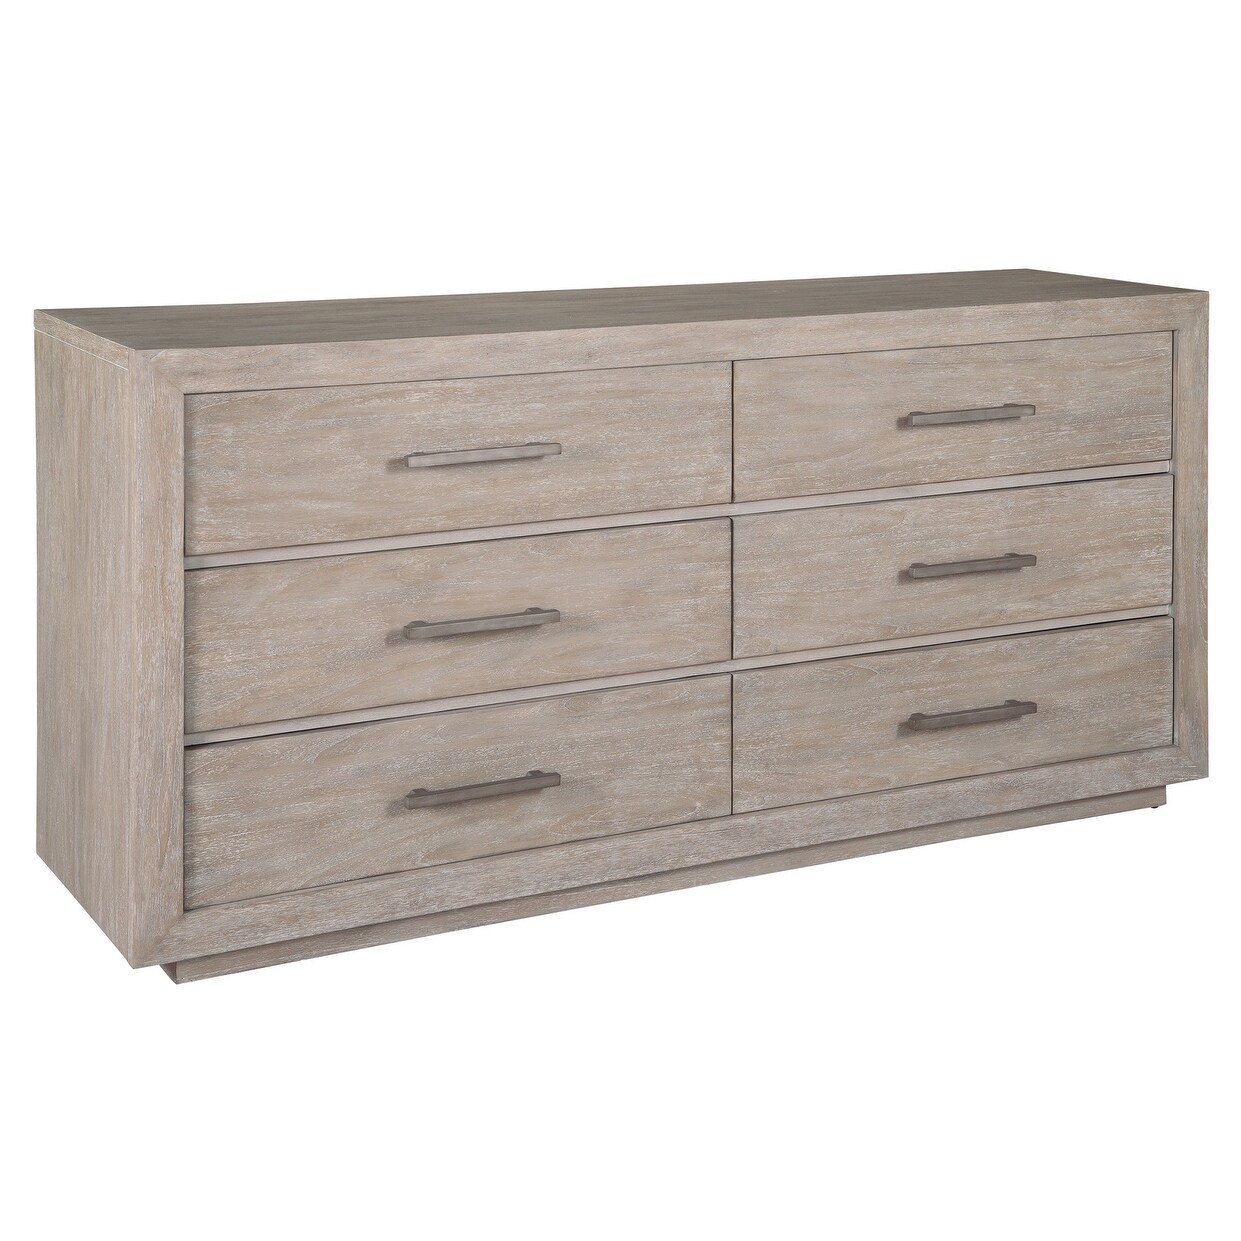 Shop Hekman 17160 Berkeley Heights 70 Inch Wide Wood Dresser With